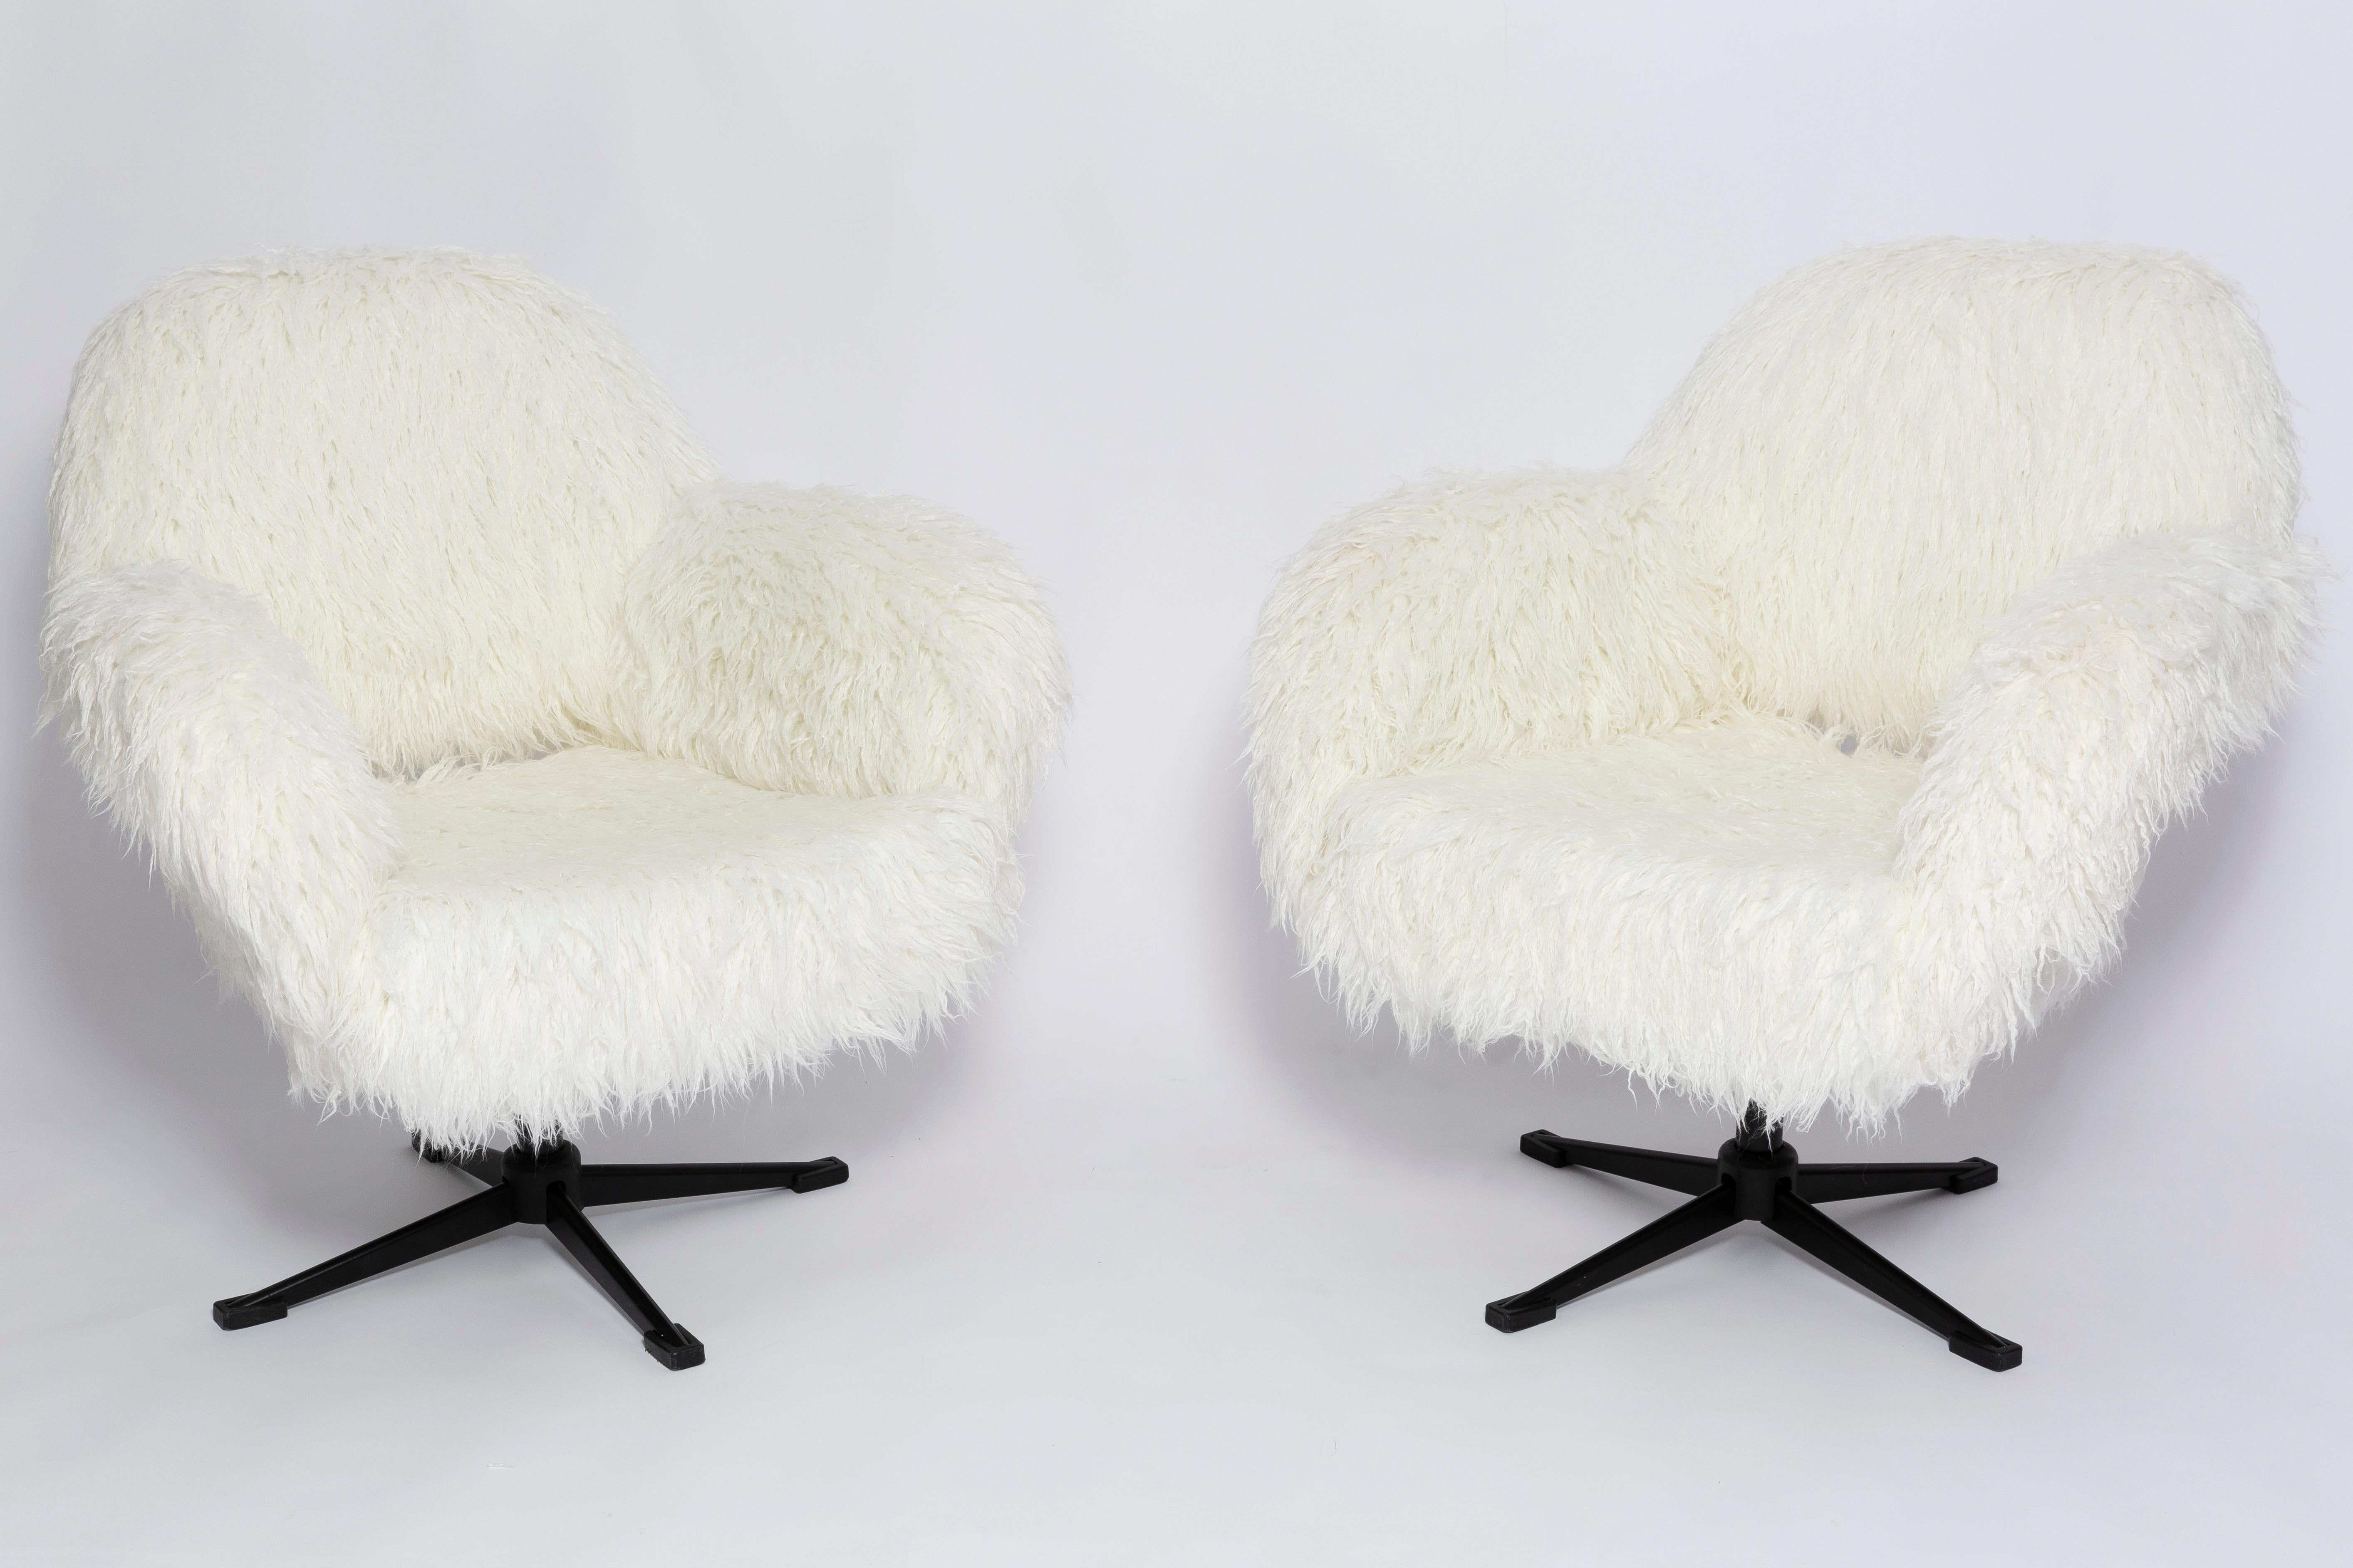 Paire de fauteuils pivotants des années 1960, fabriqués dans l'usine de meubles silésienne de Swiebodzin - ils sont actuellement uniques. Très confortable. Grâce à leurs dimensions, ils s'intègrent parfaitement, même dans les petits appartements,